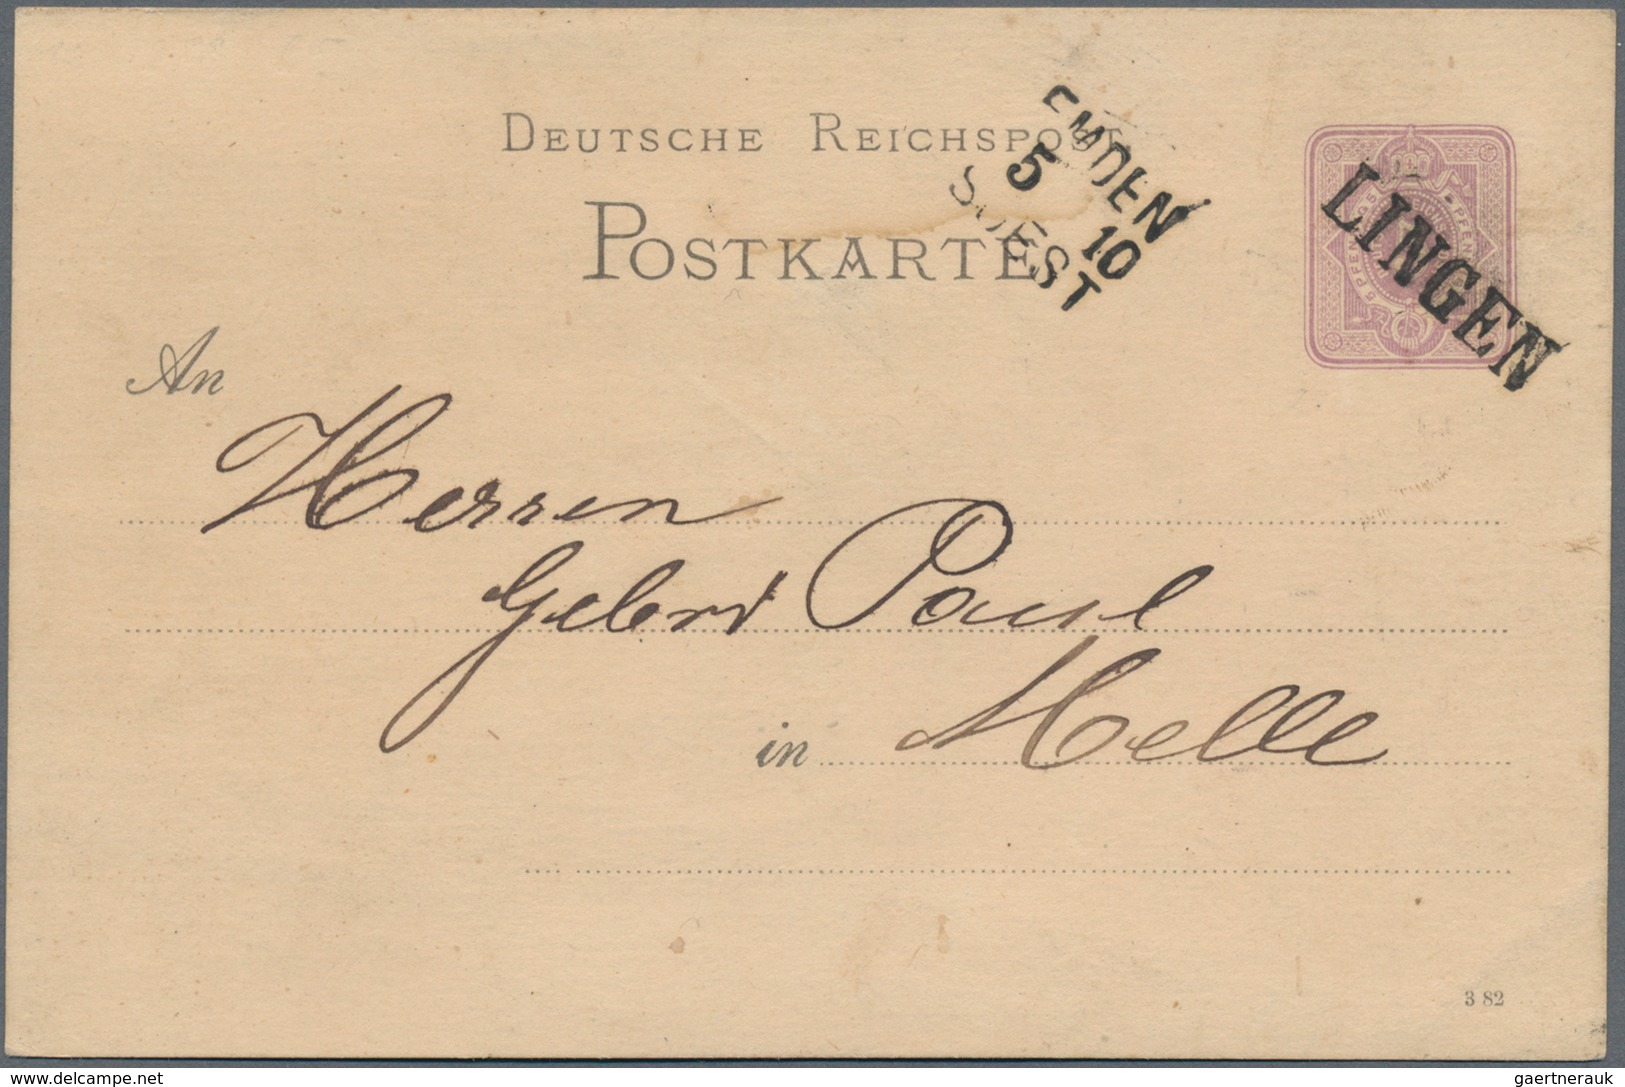 Deutsches Reich - Bahnpost: 1872/1885, STATIONS-STEMPEL, gehaltvolle Sammlung mit ca.50 Belegen ab B